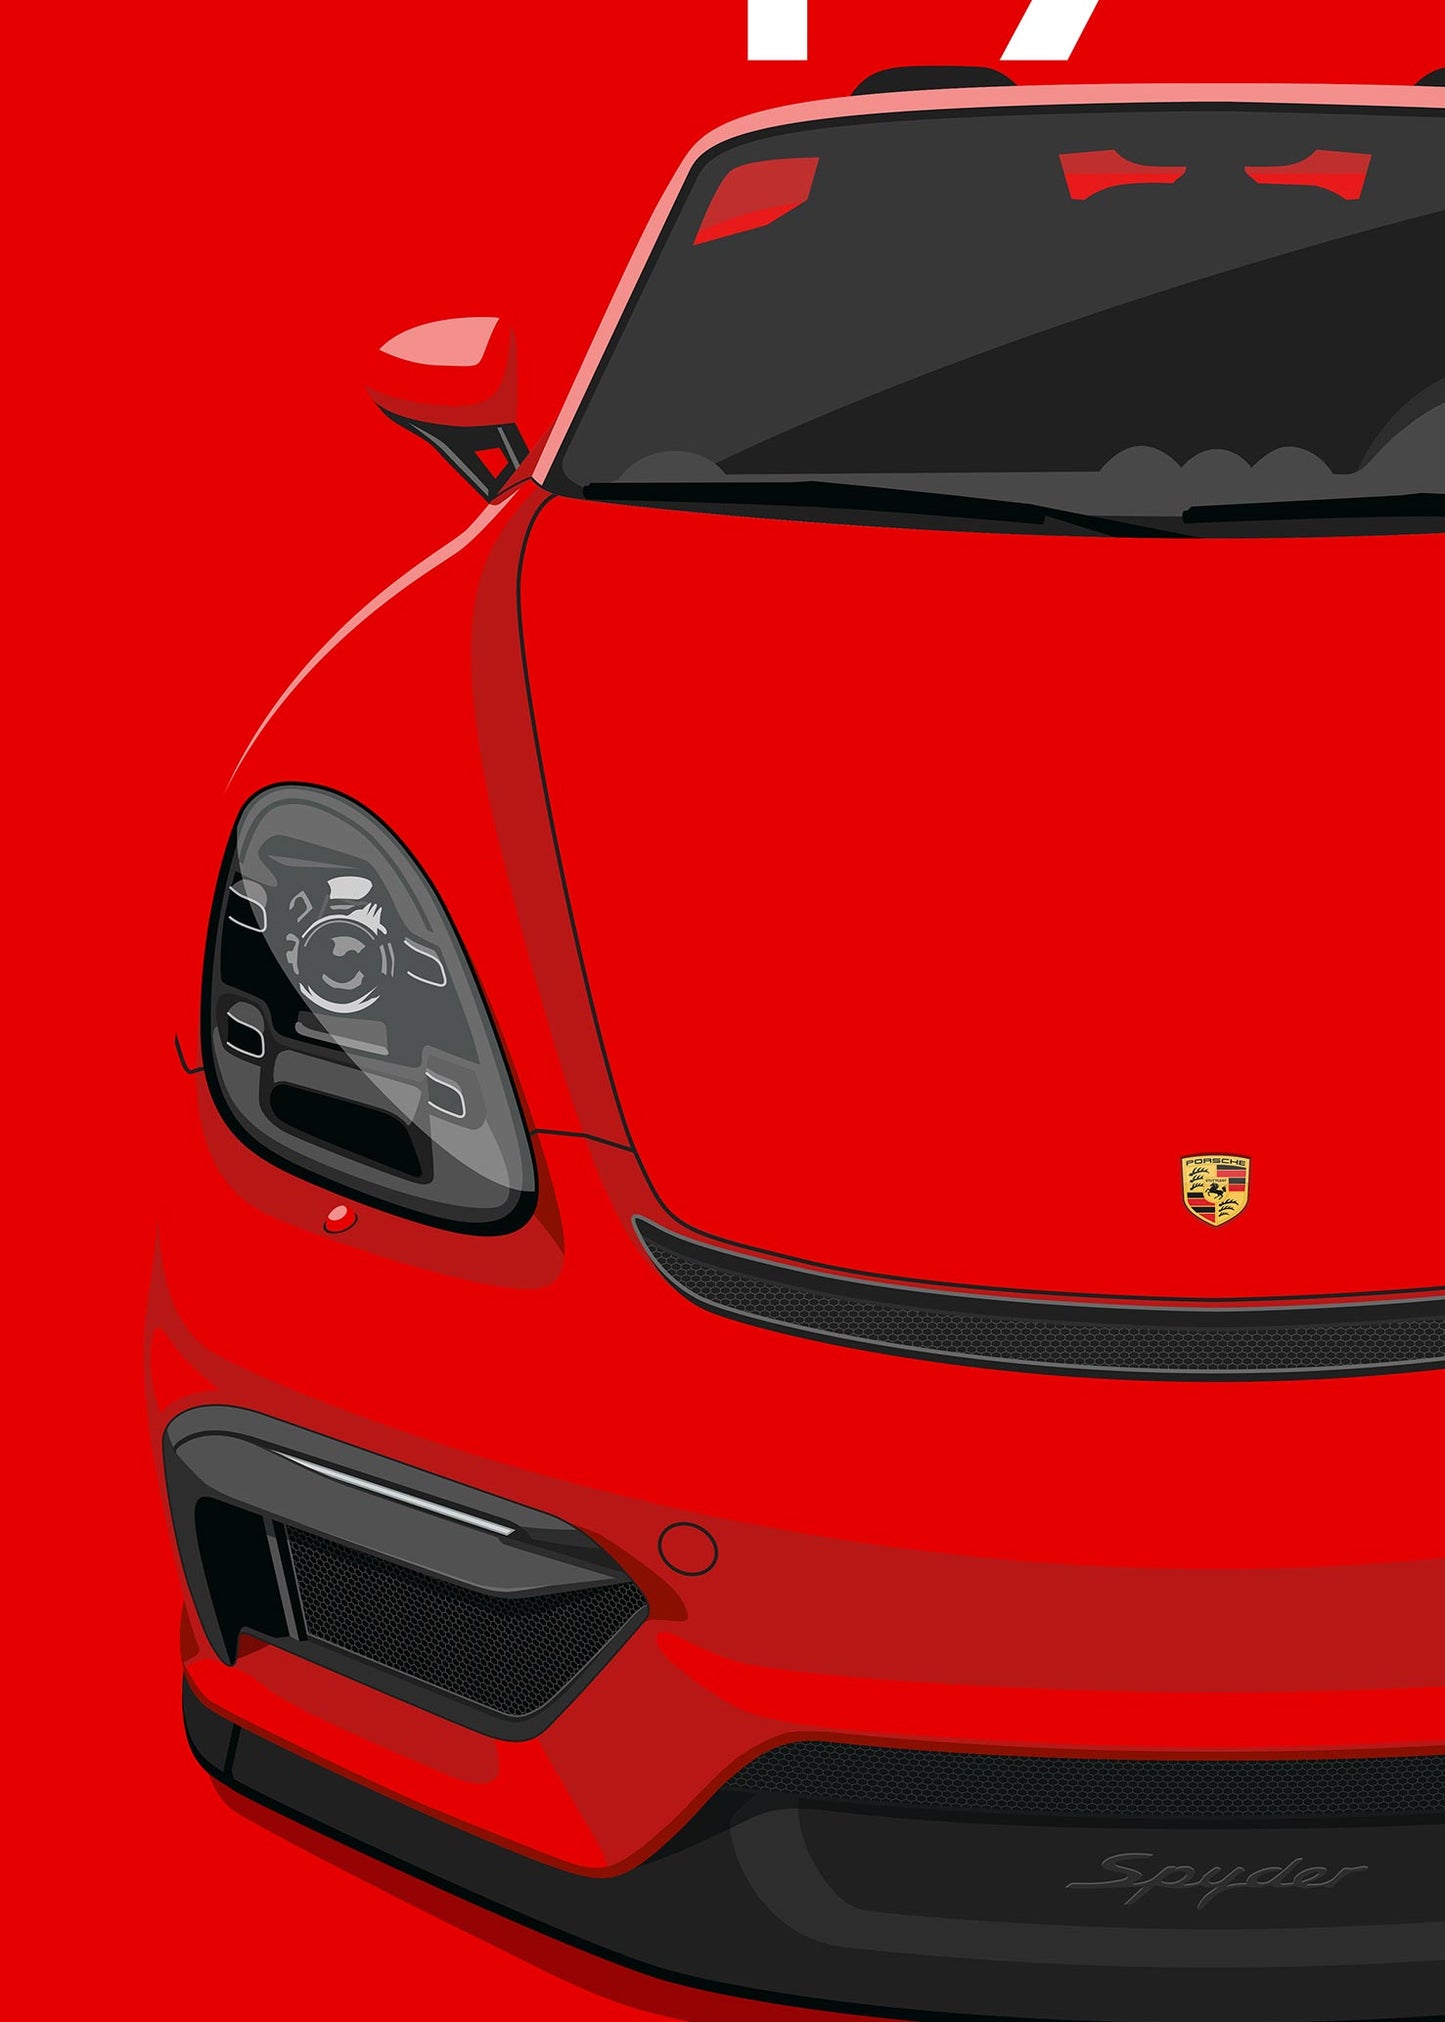 2020 Porsche 718 Spyder (982) - Guards Red - poster print